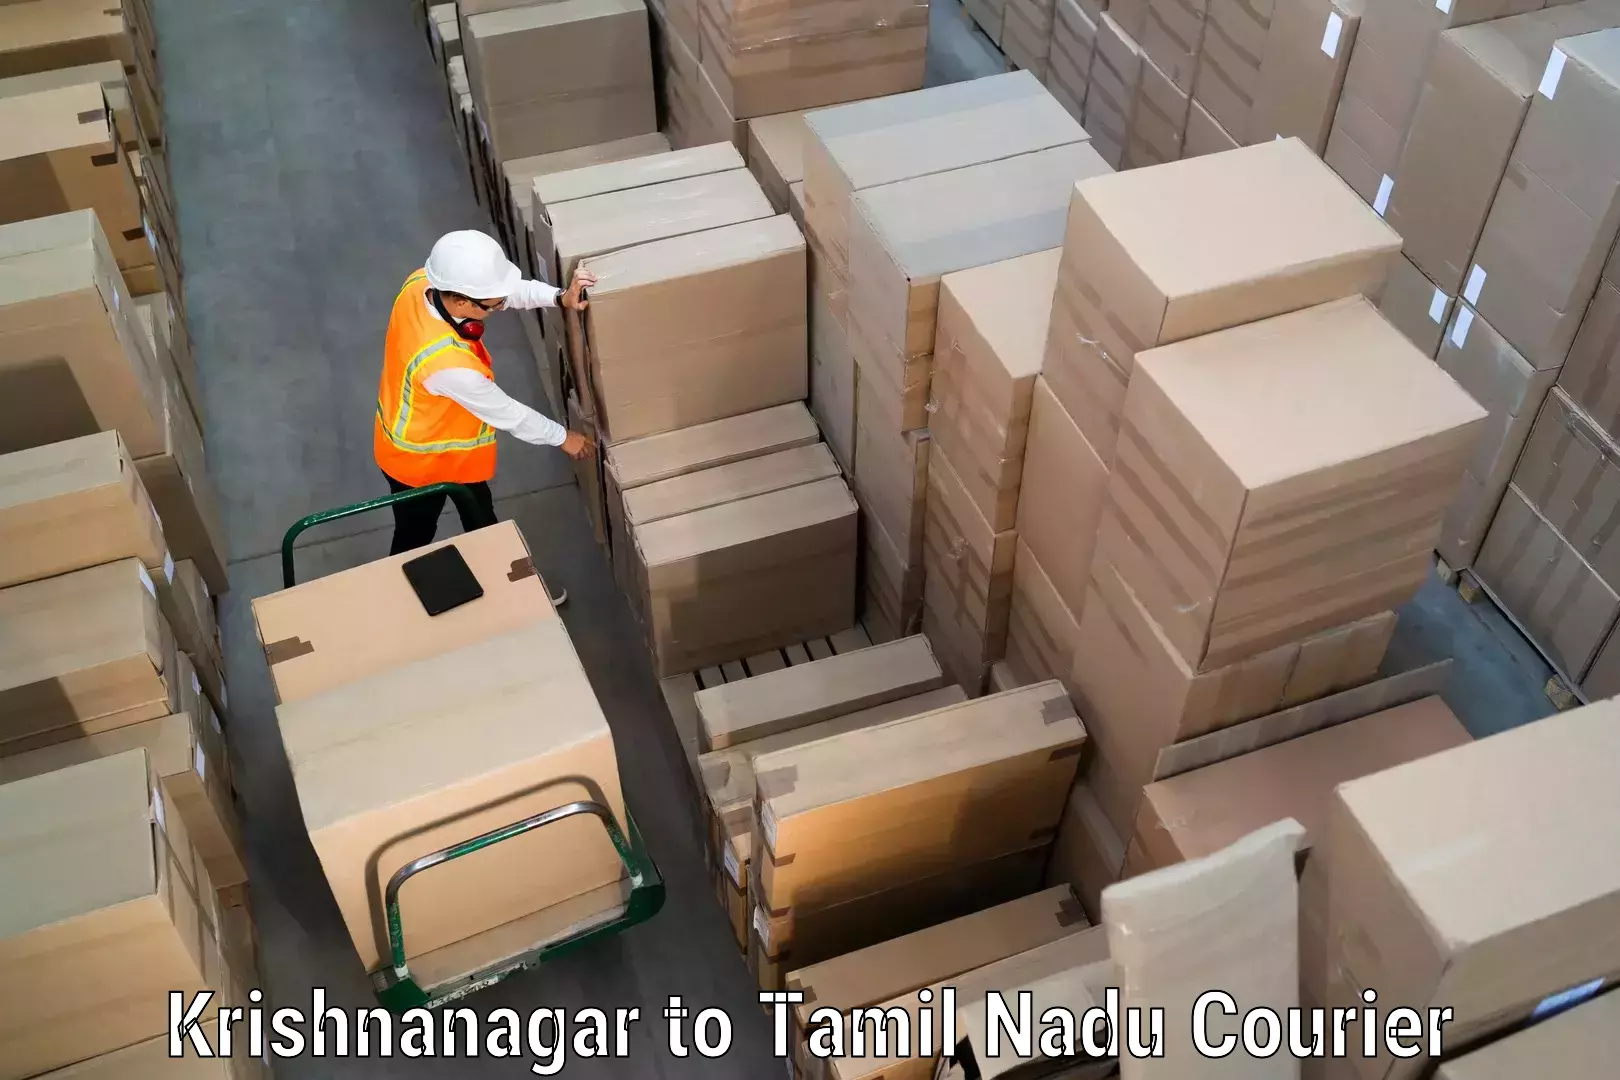 Urgent courier needs Krishnanagar to Nandambakkam